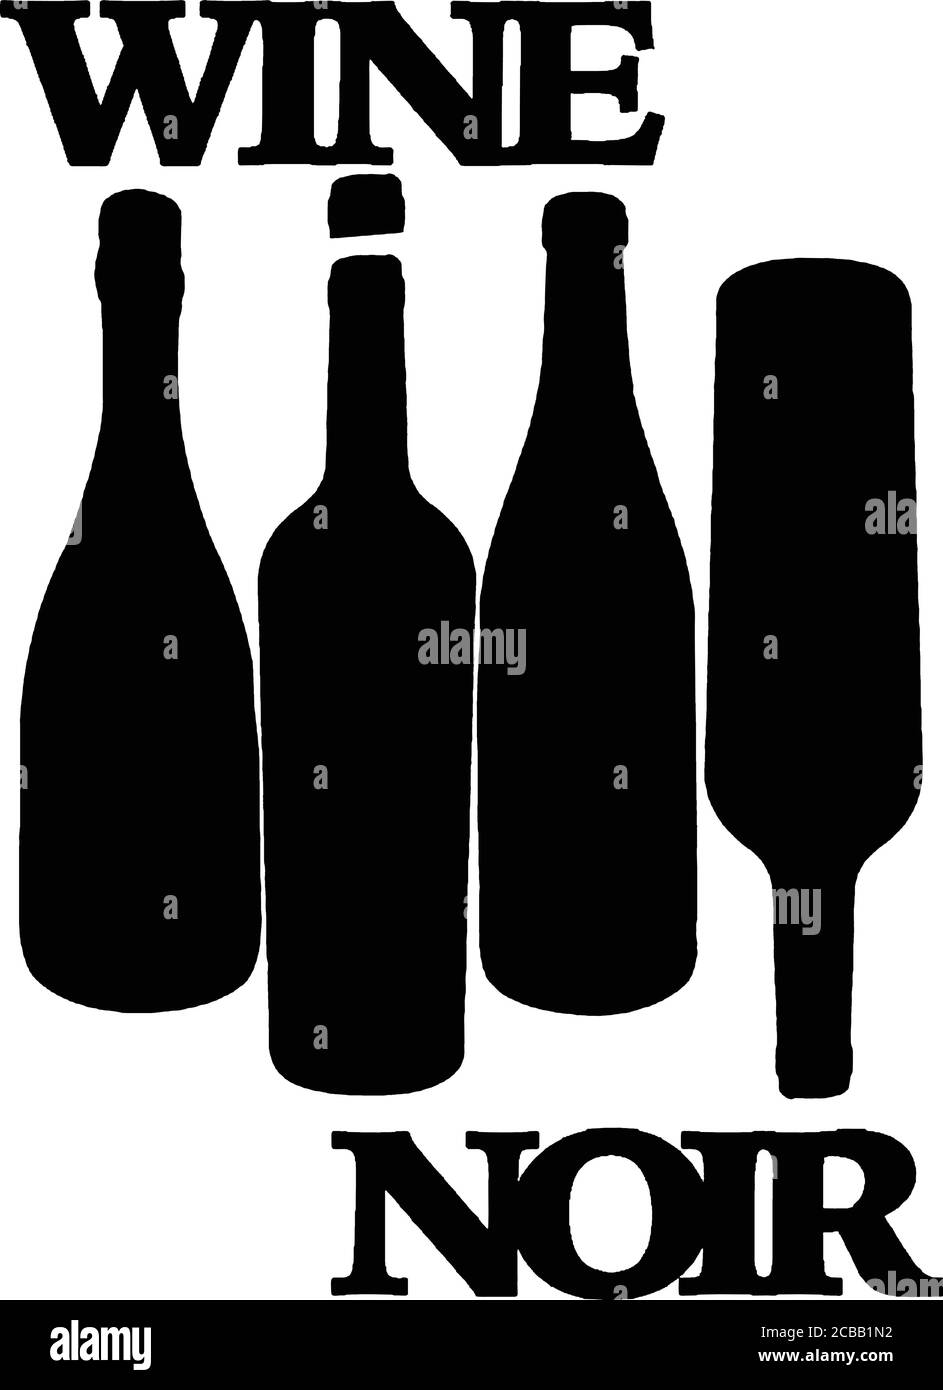 Vector illustration of wine bottle silhouette Stock Vector